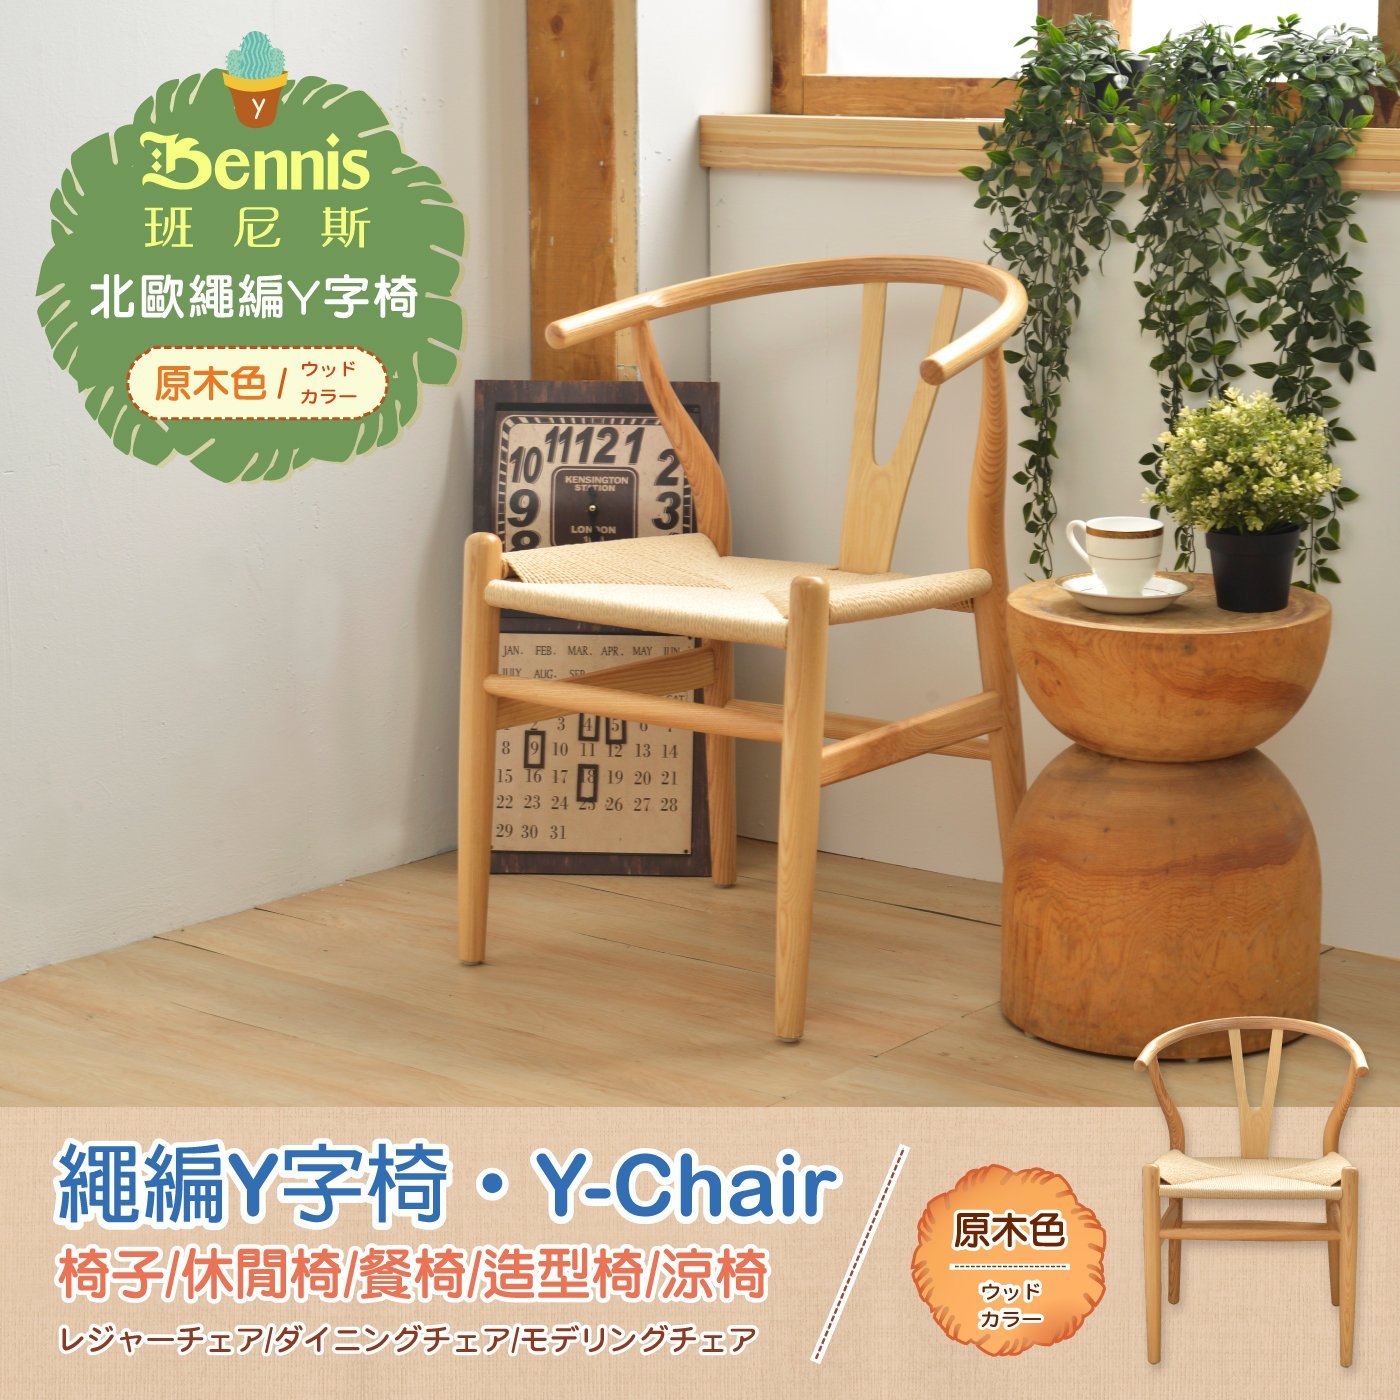 繩編Y字型曲木造型椅